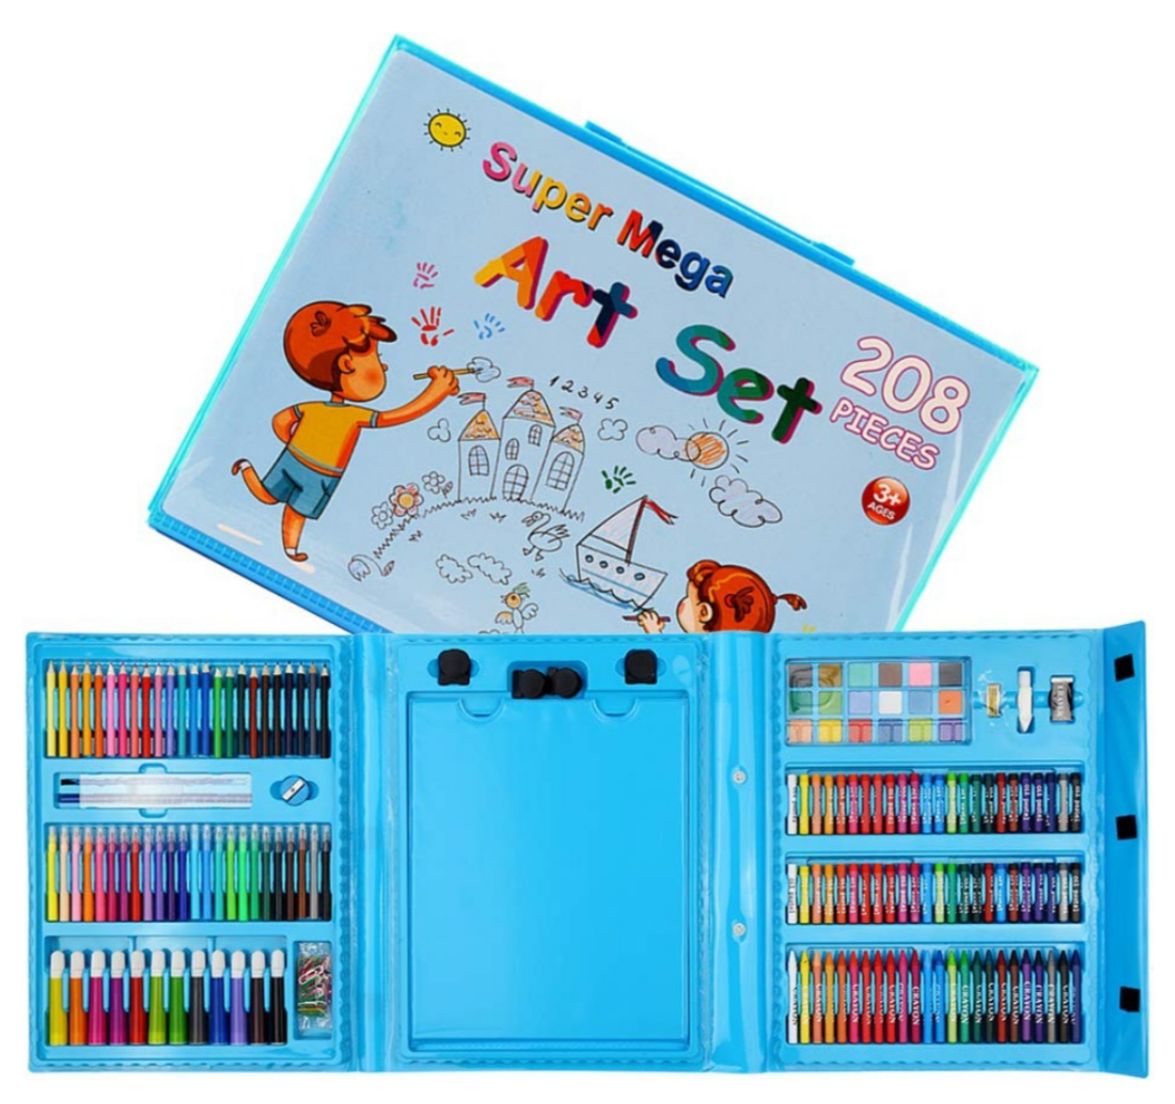 Set De Arte Maleta 208 Piezas Para Niños Creatividad Dibujo Azul